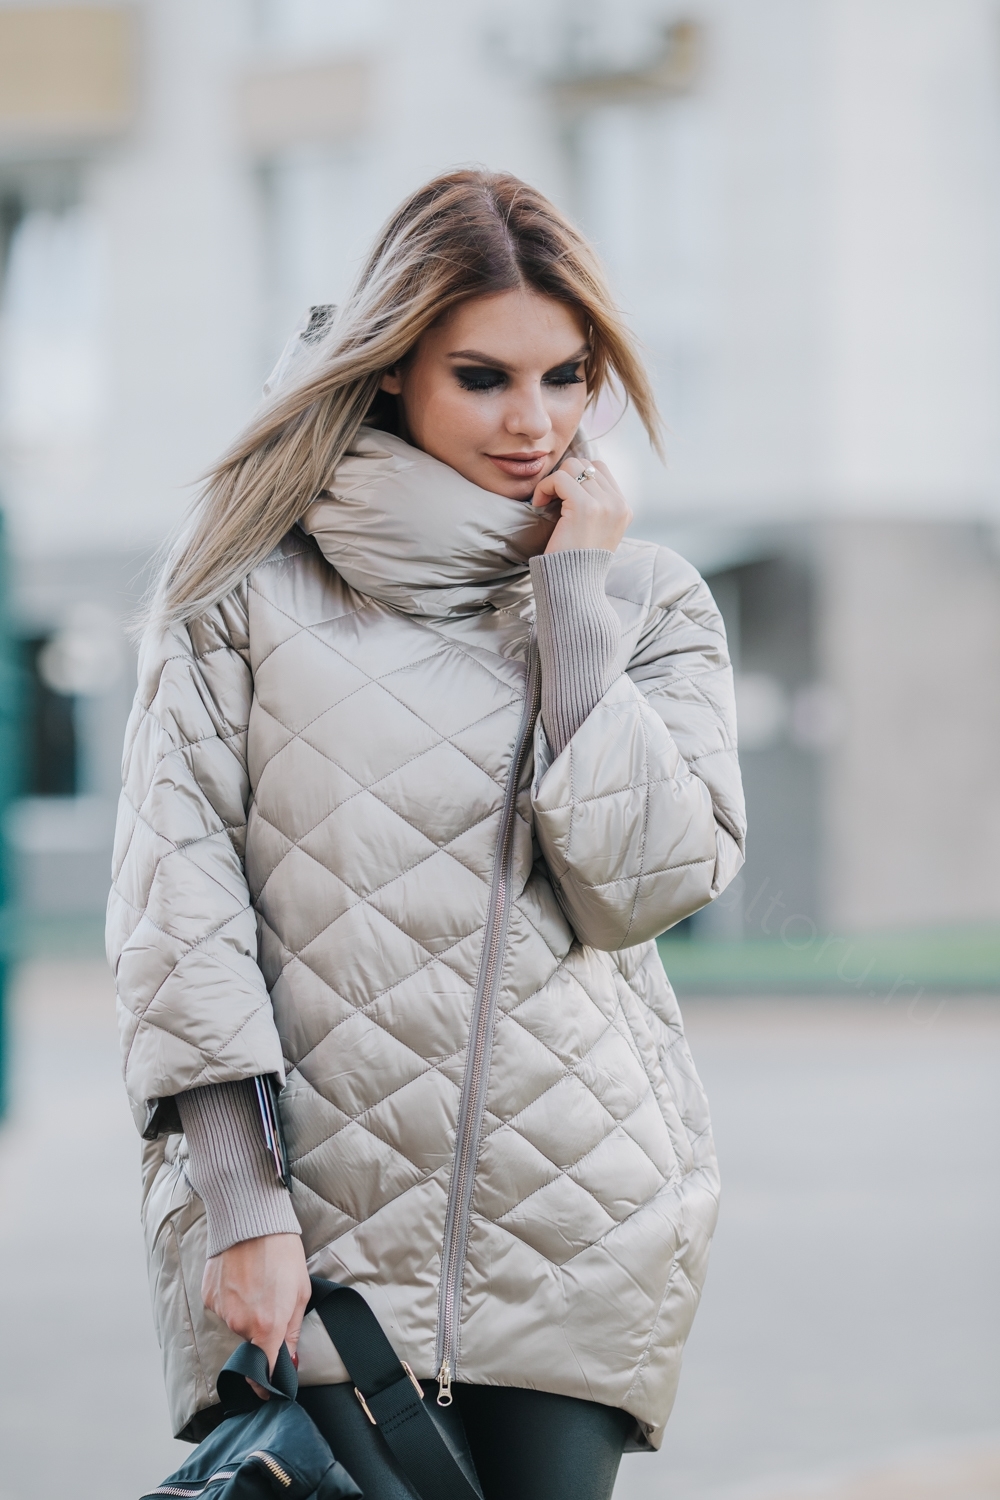 Купить женские куртки по выгодным ценам в интернет магазине - tdksovremennik.ru - tdksovremennik.ru